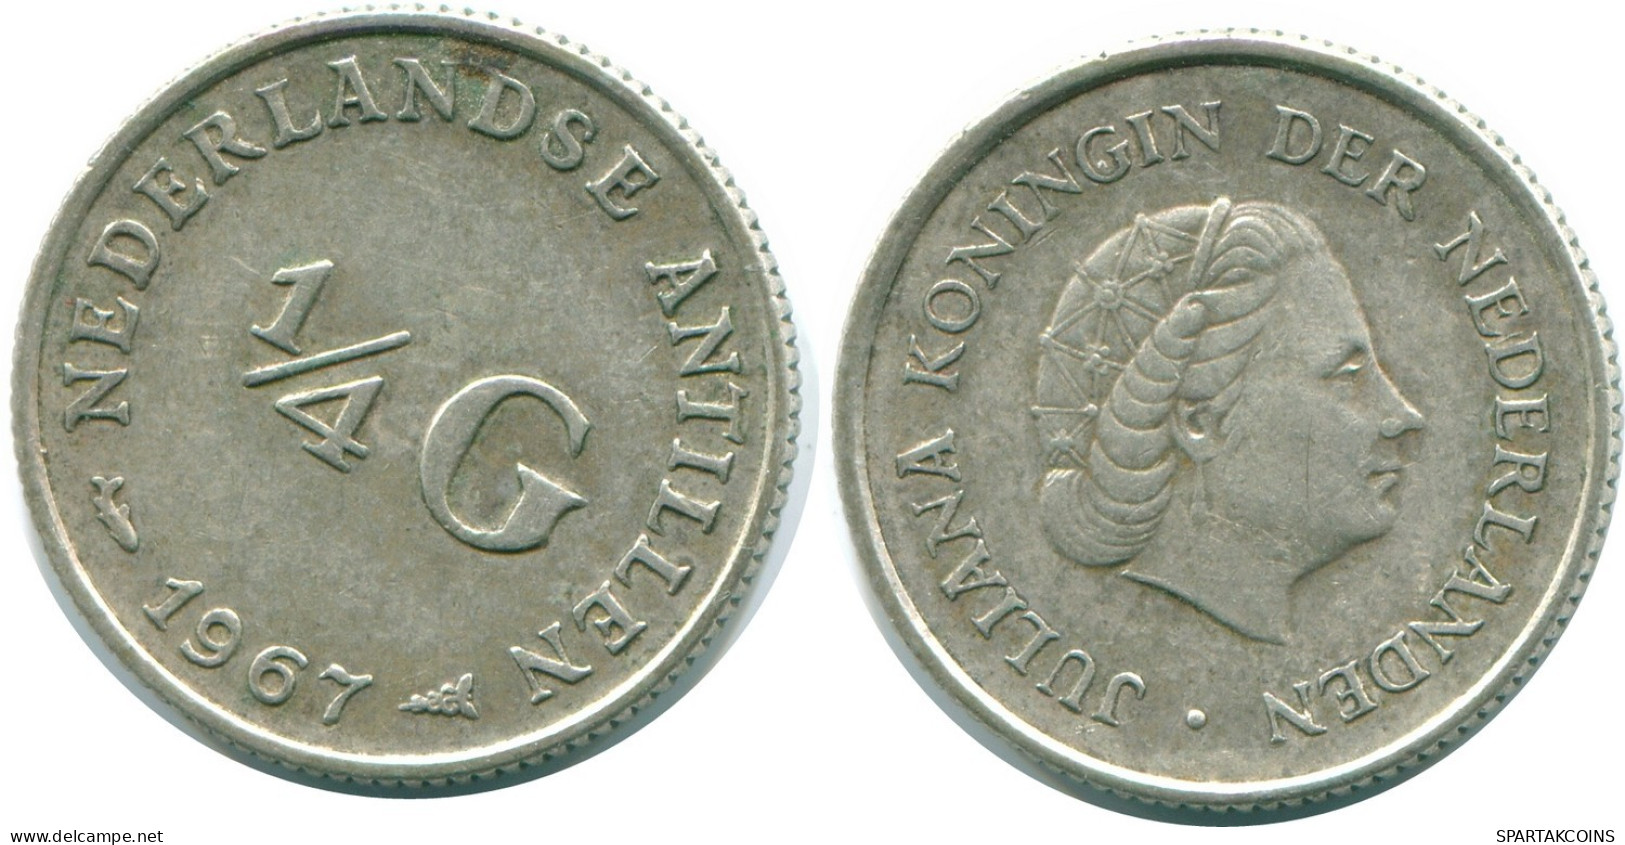 1/4 GULDEN 1967 NIEDERLÄNDISCHE ANTILLEN SILBER Koloniale Münze #NL11521.4.D.A - Antillas Neerlandesas